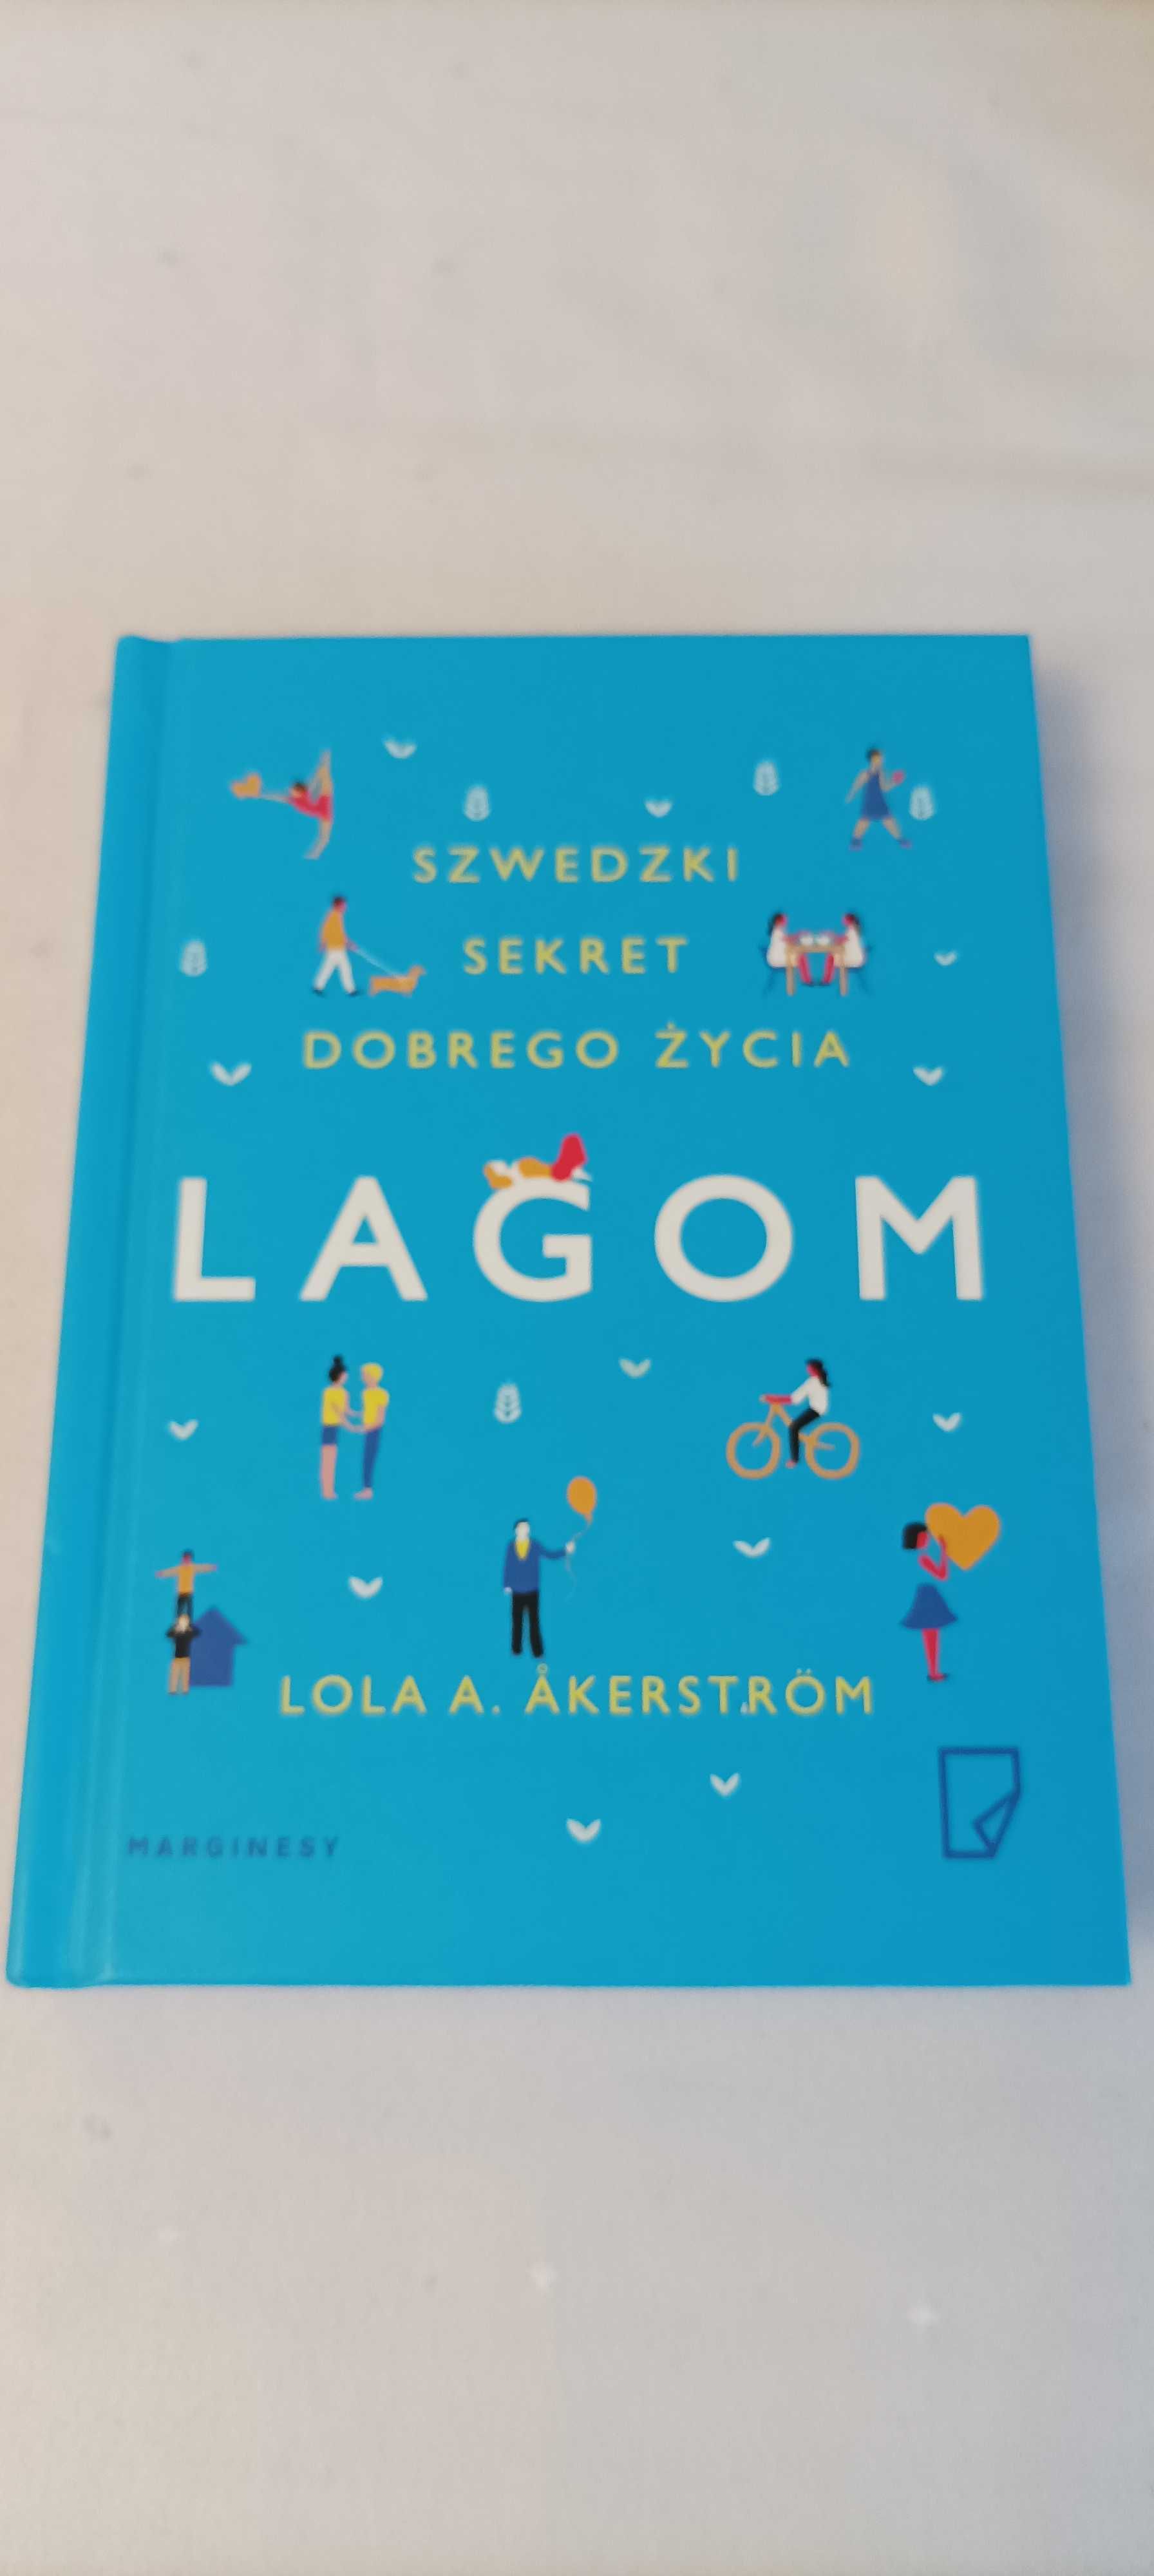 Lagom - szwedzki sekret dobrego życia